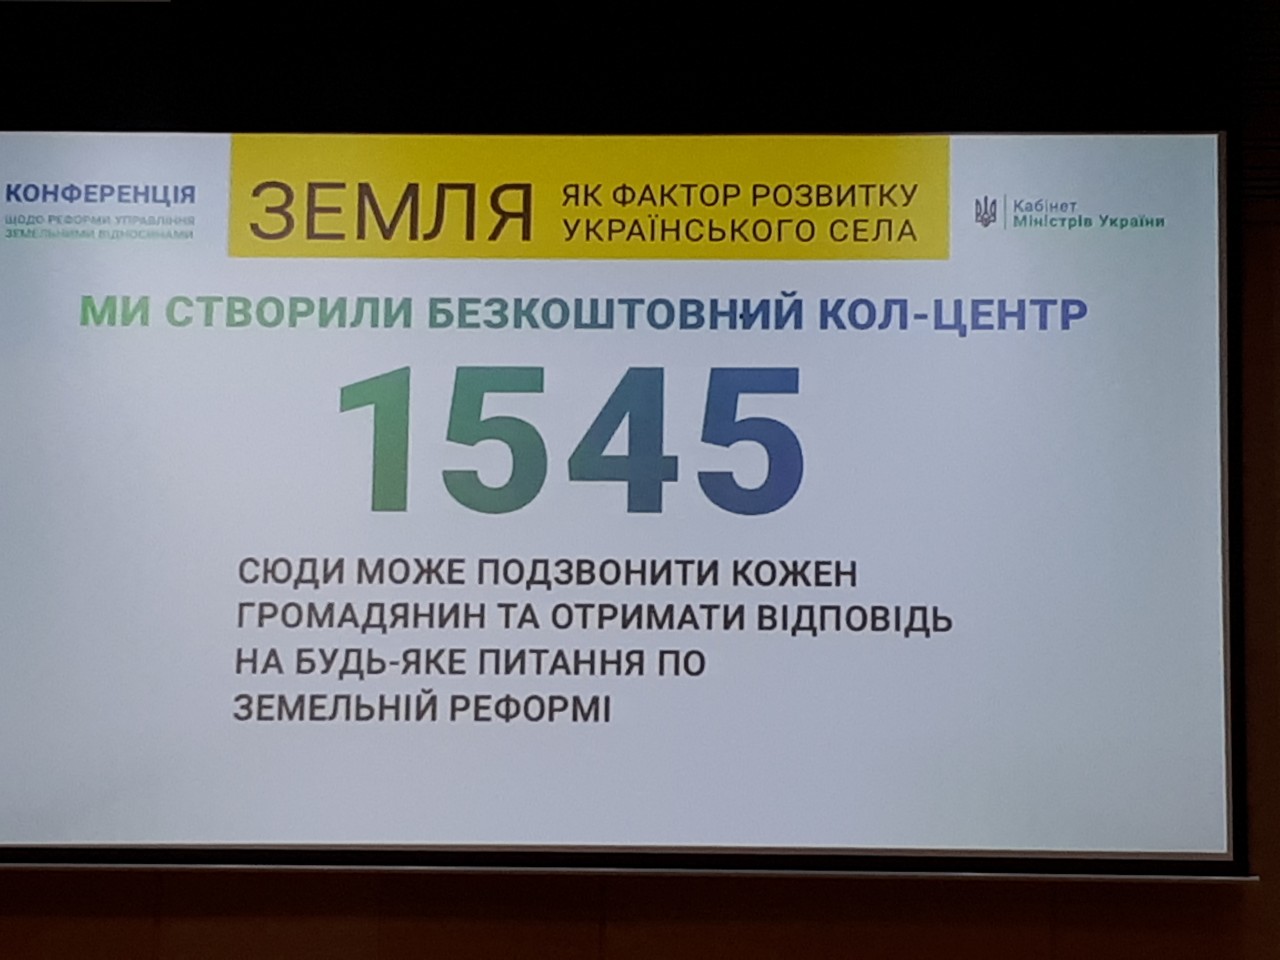 Додатково конференція щодо реформи управління земельними відносинами «Земля як фактор розвитку українського села» 6